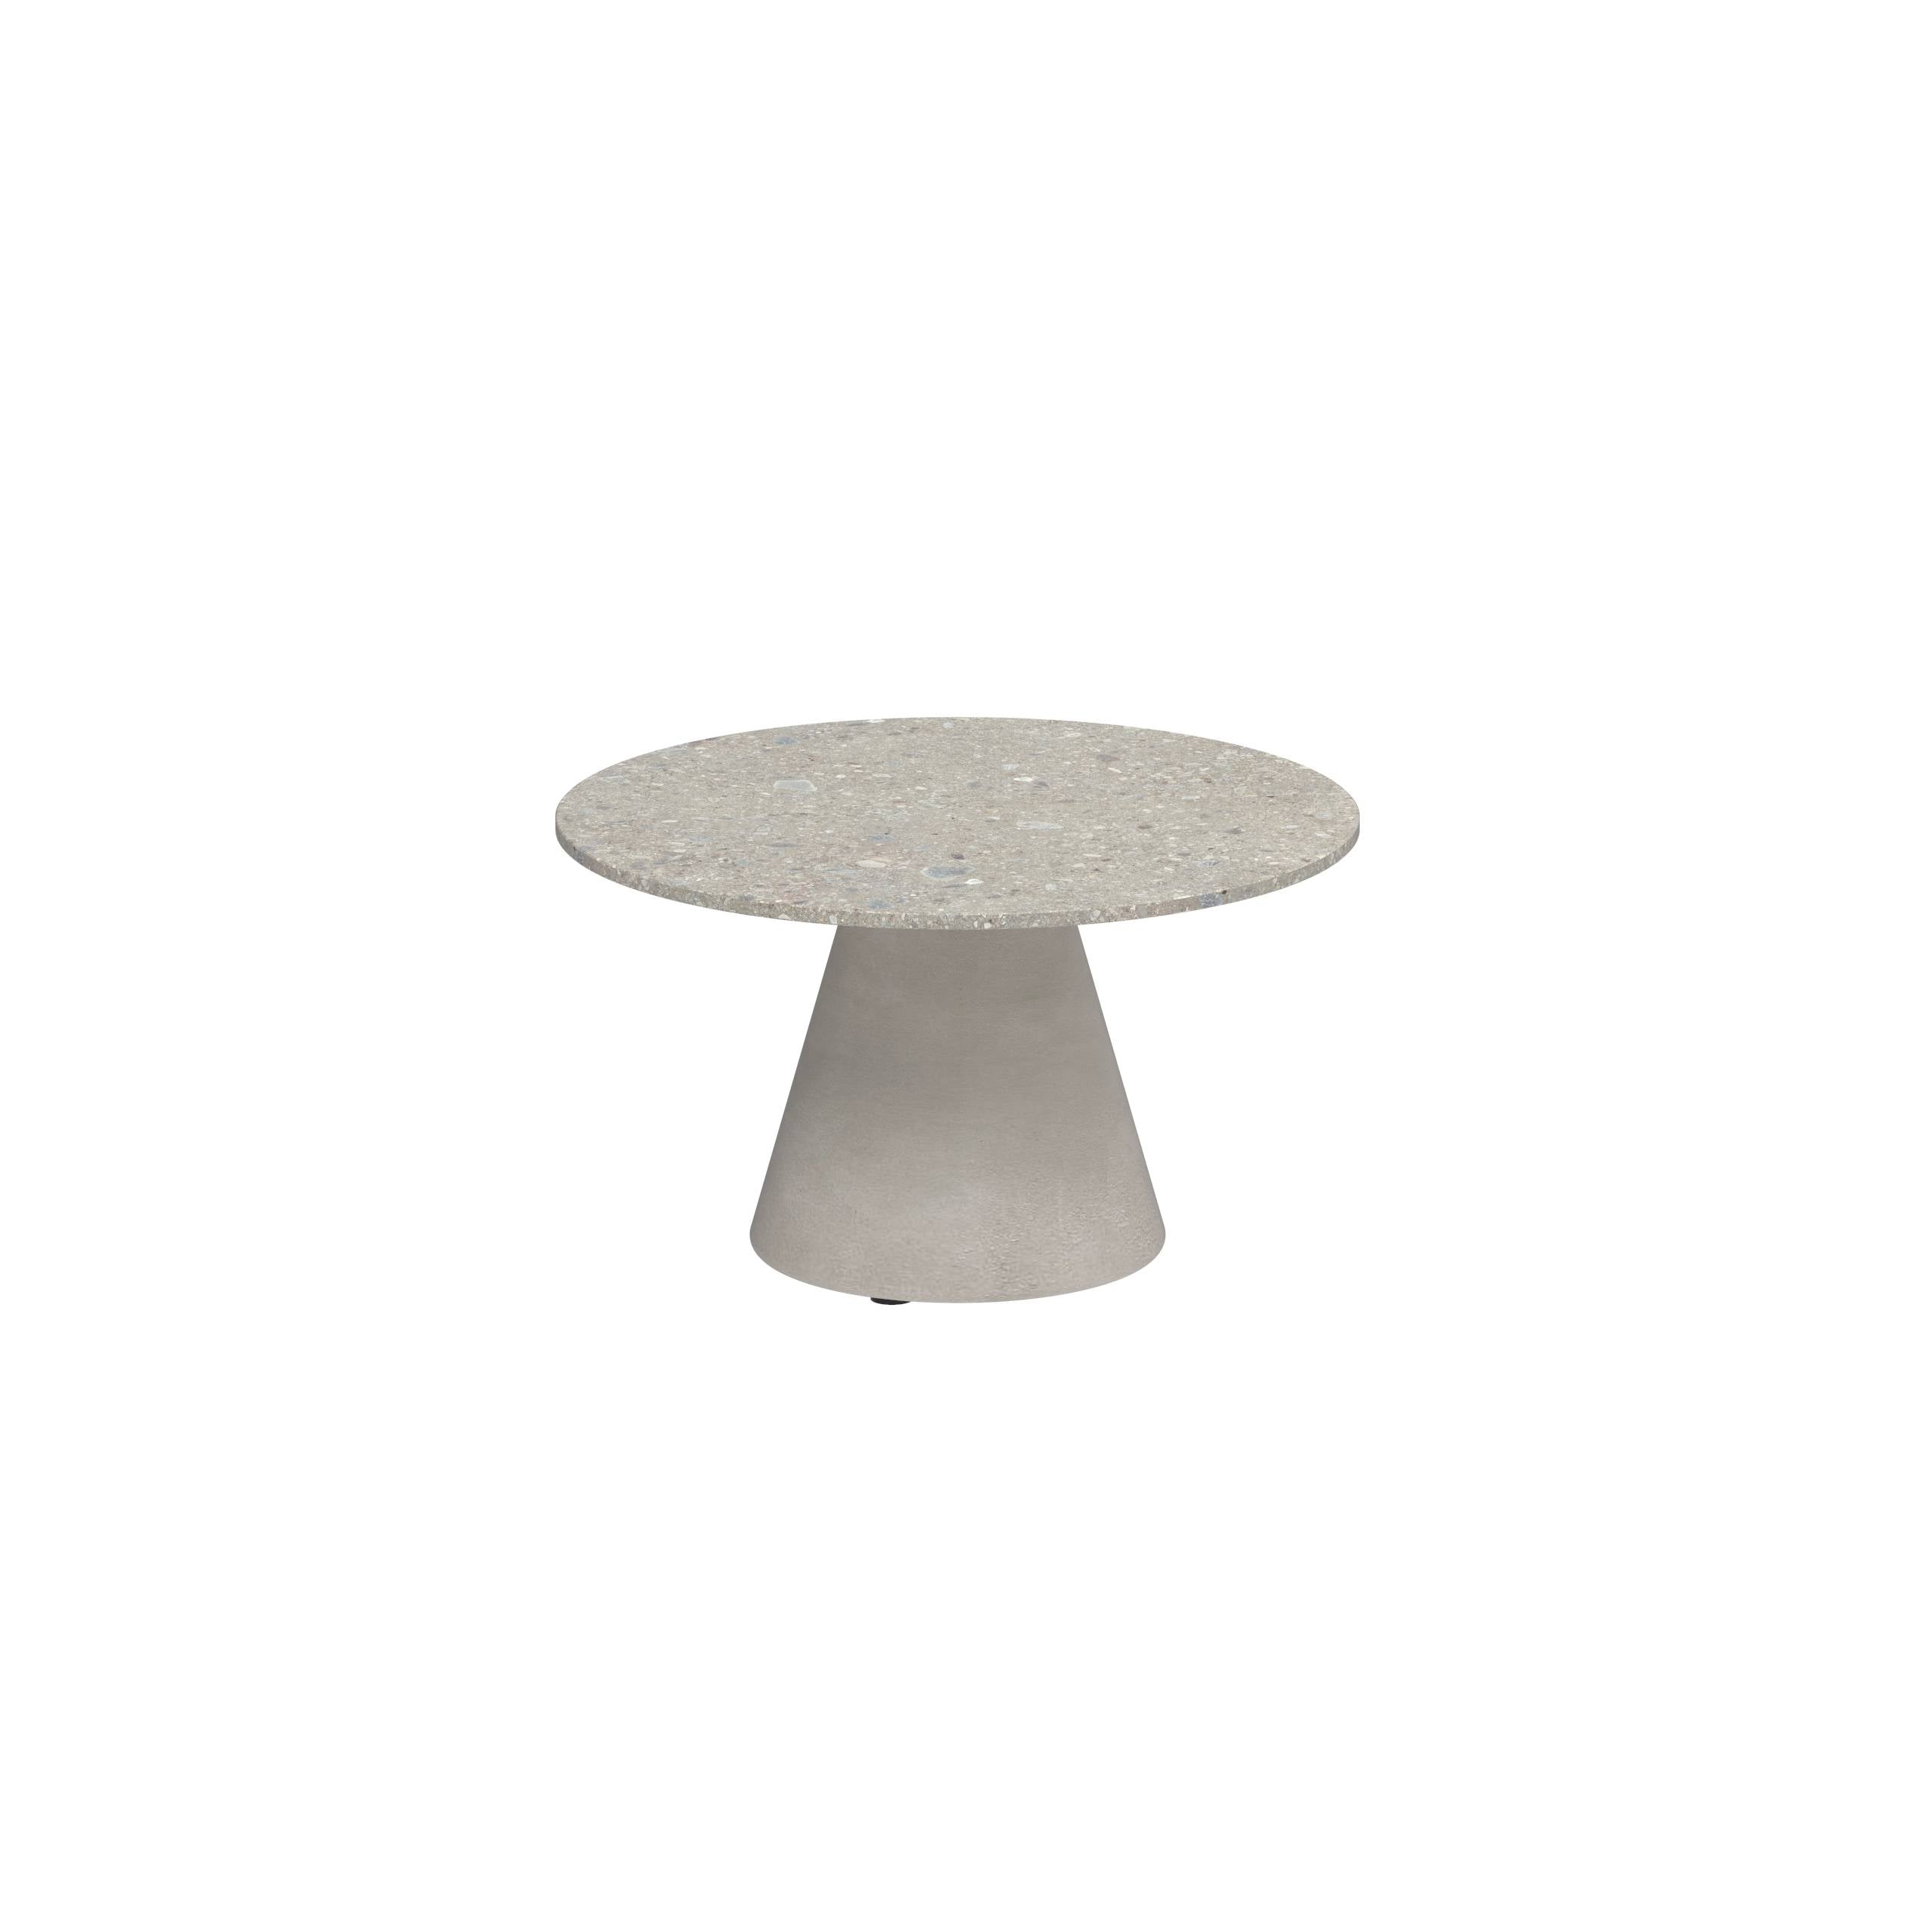 Conix Side Table Ø60cm Leg Concrete Cement Grey - Table Top Ceramic Ceppo Dolomitica